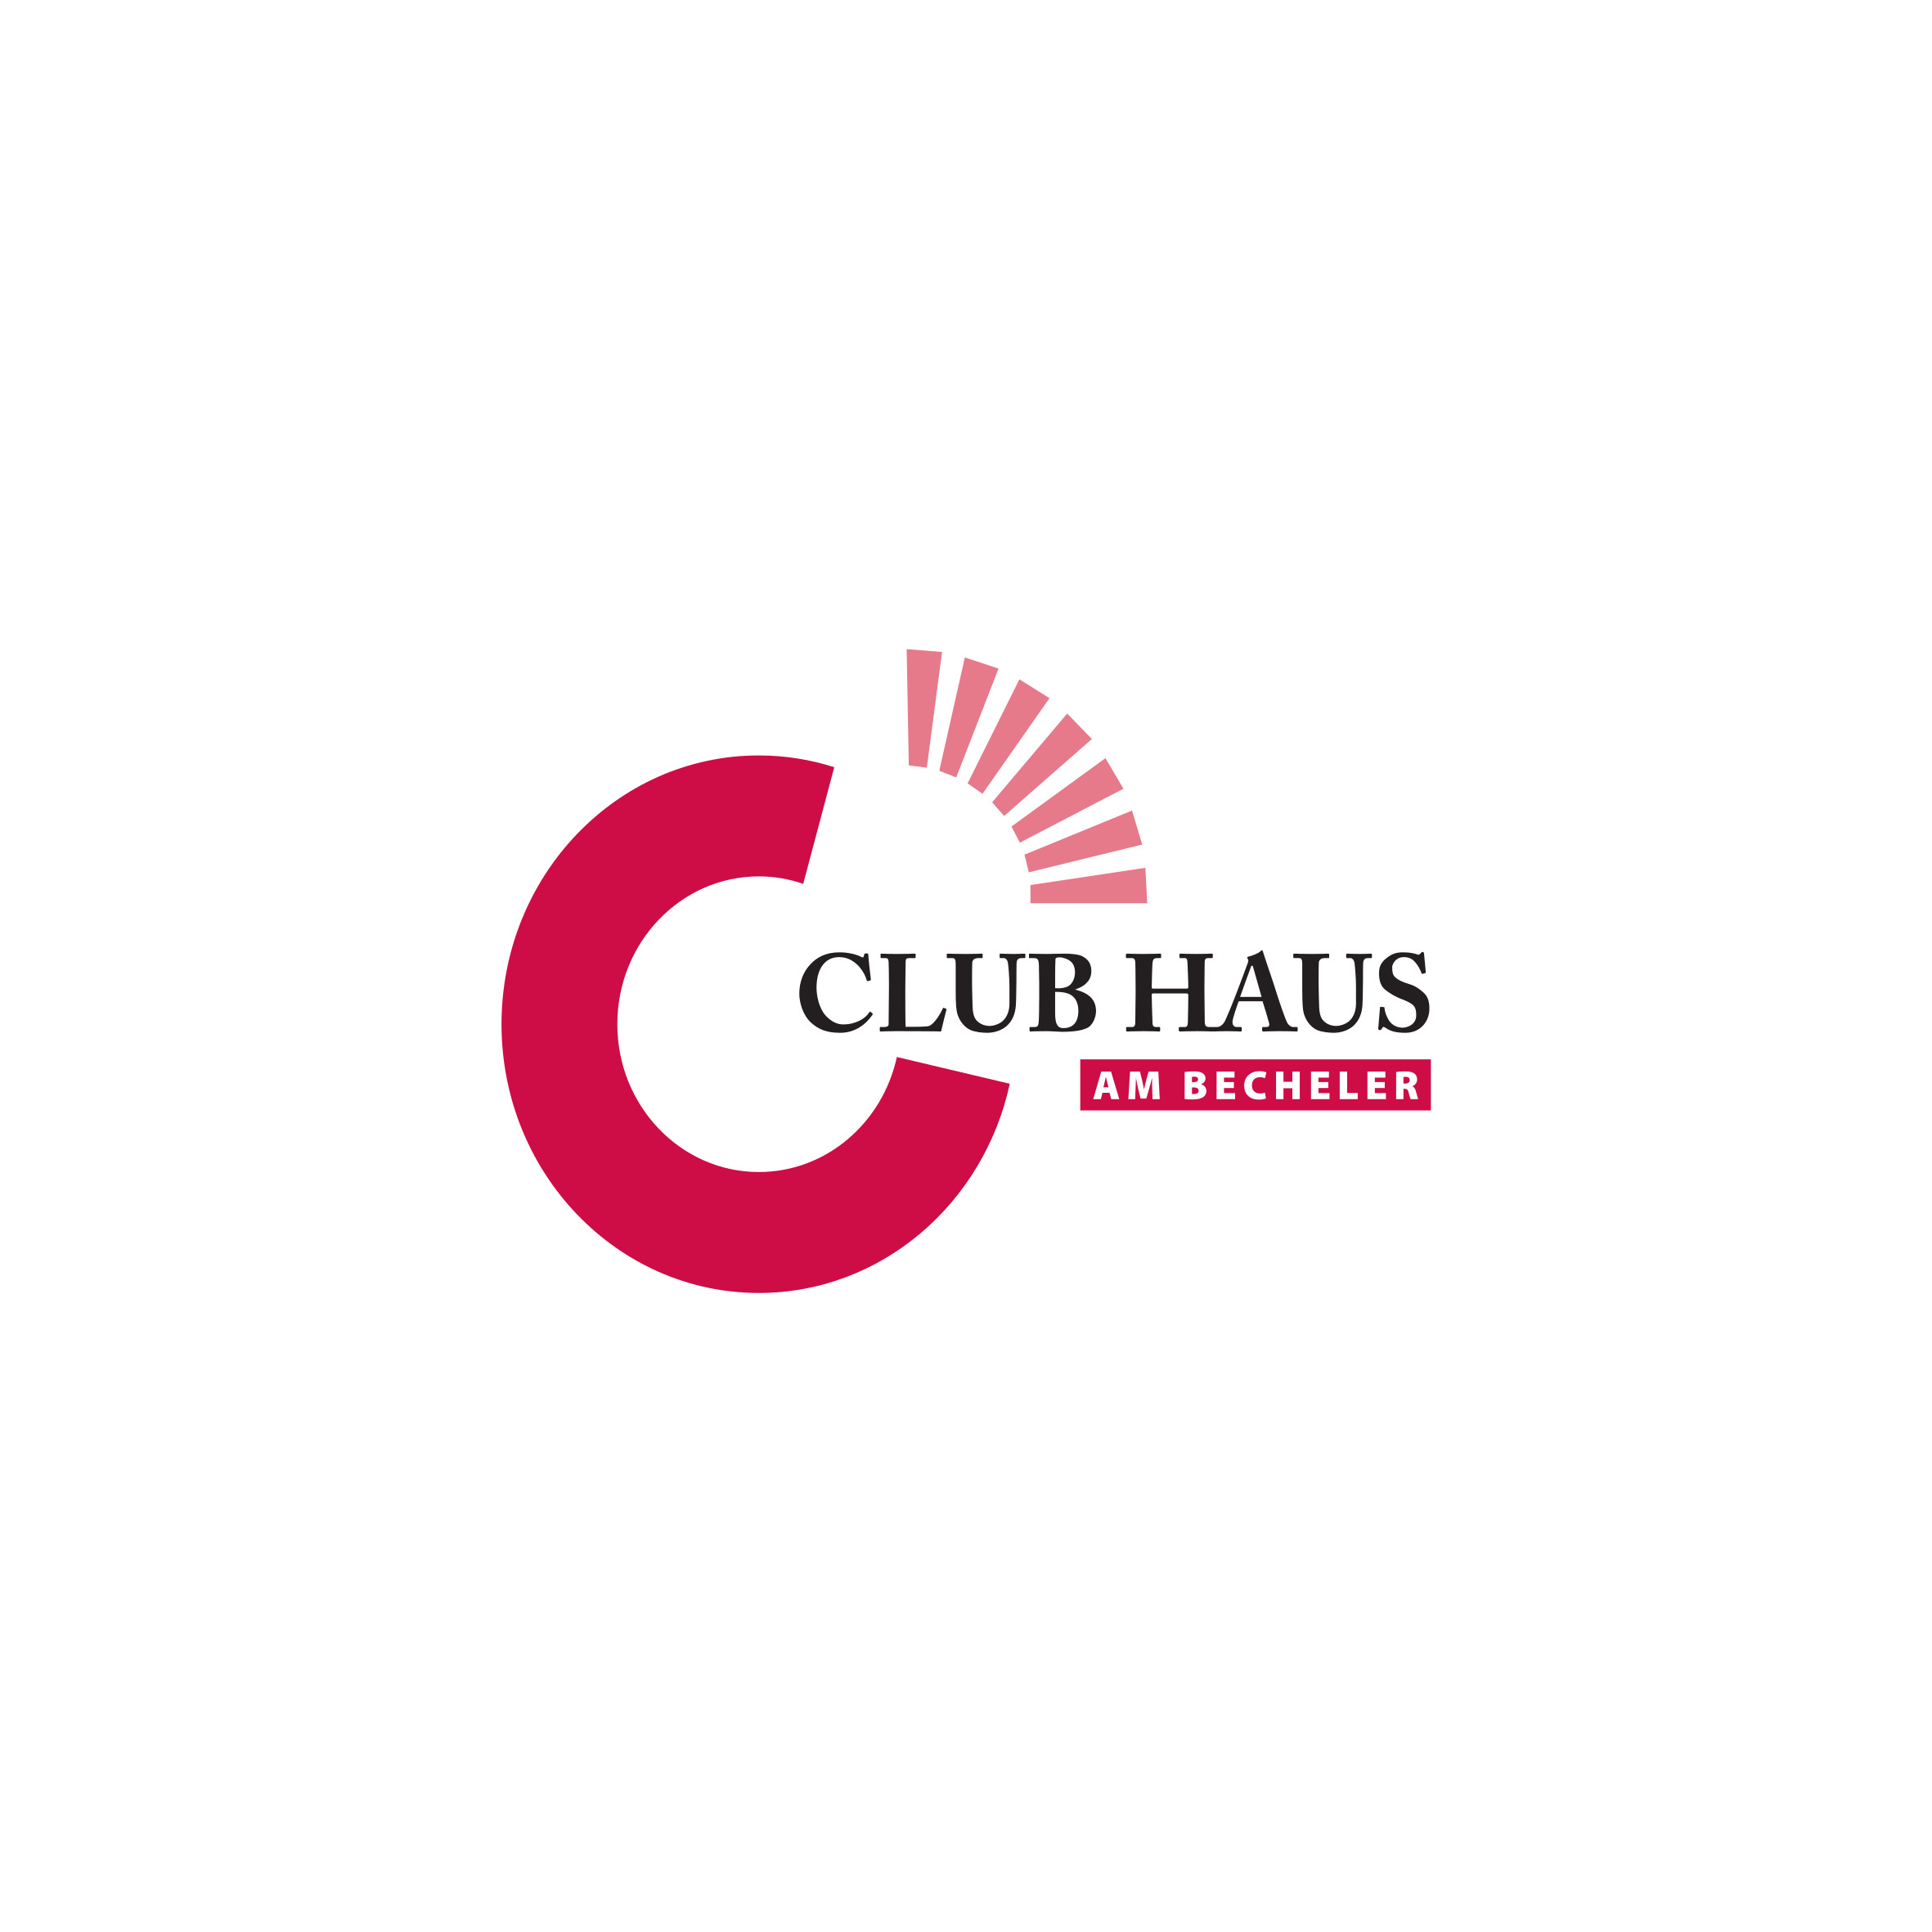 Club Haus am Becheler